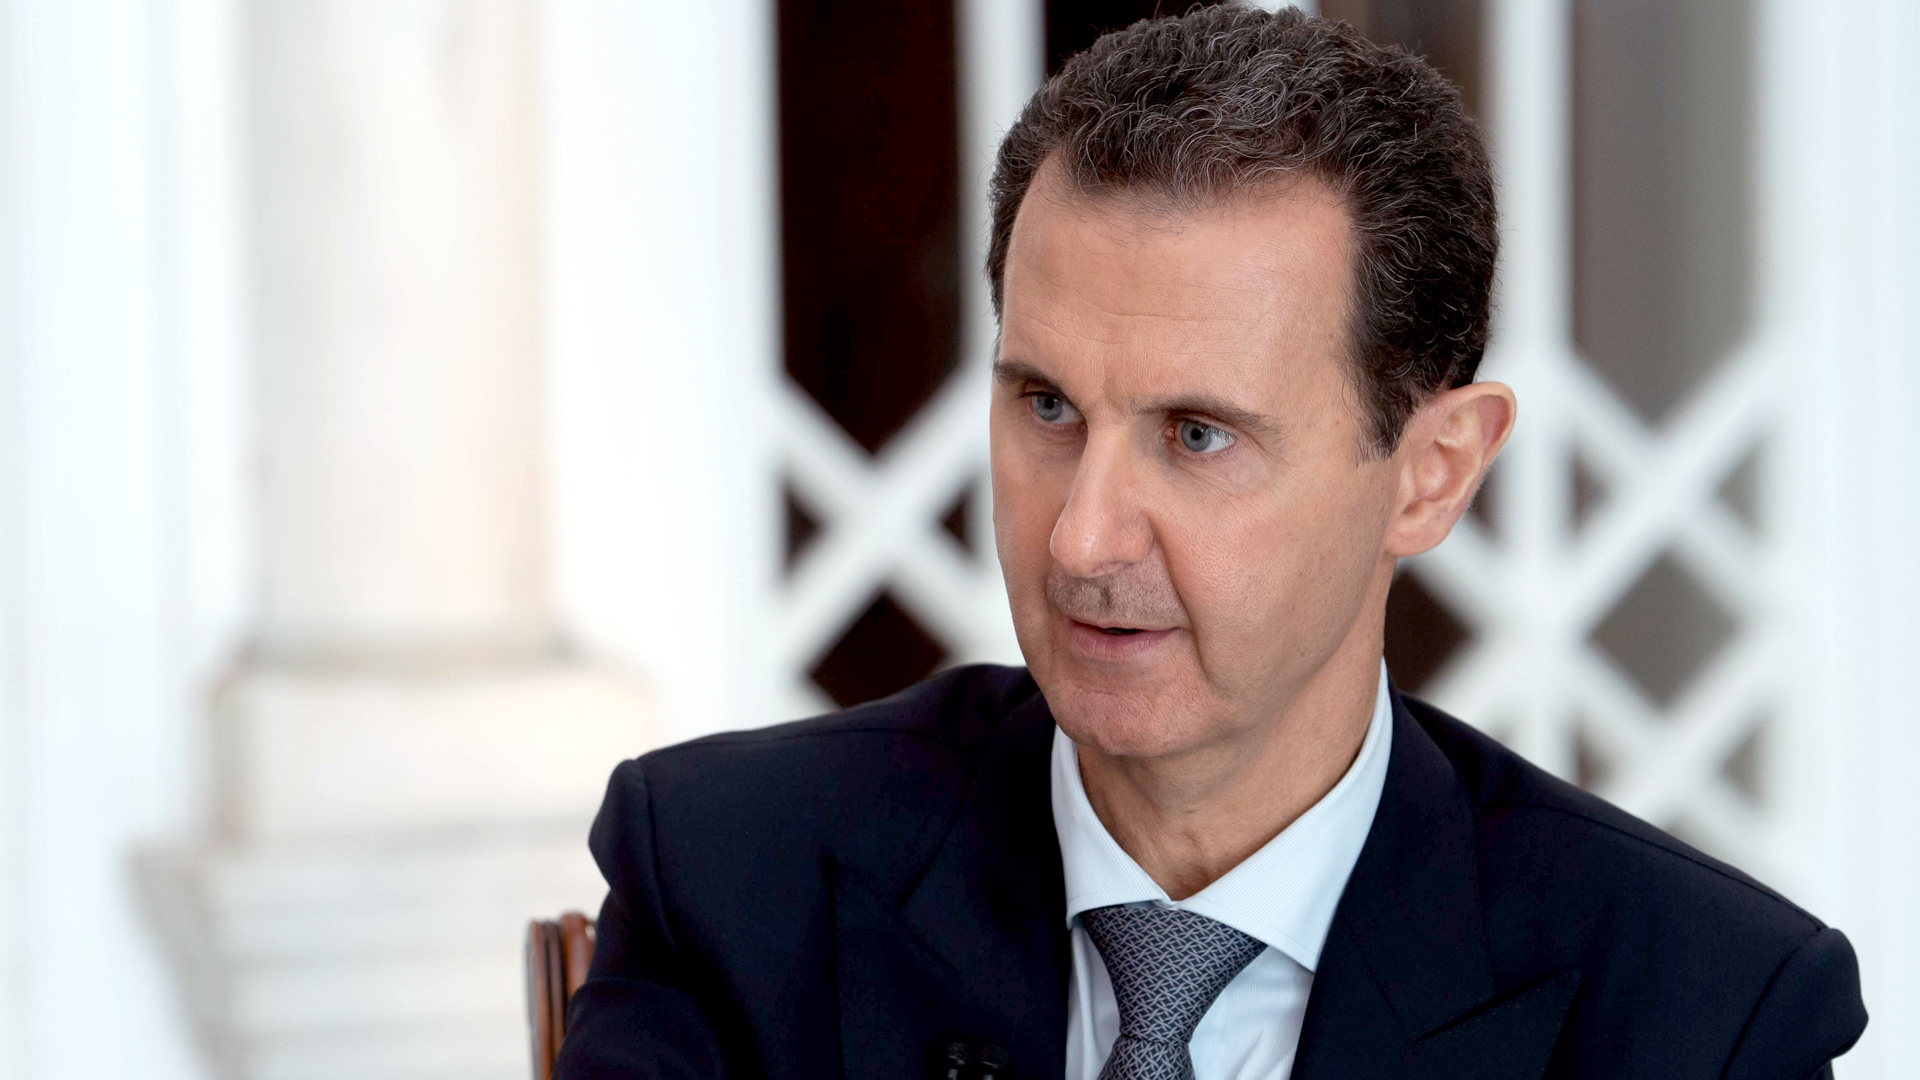 Syriens Präsident Assad spricht beim einem Fernsehinterview | Bildquelle: AFP